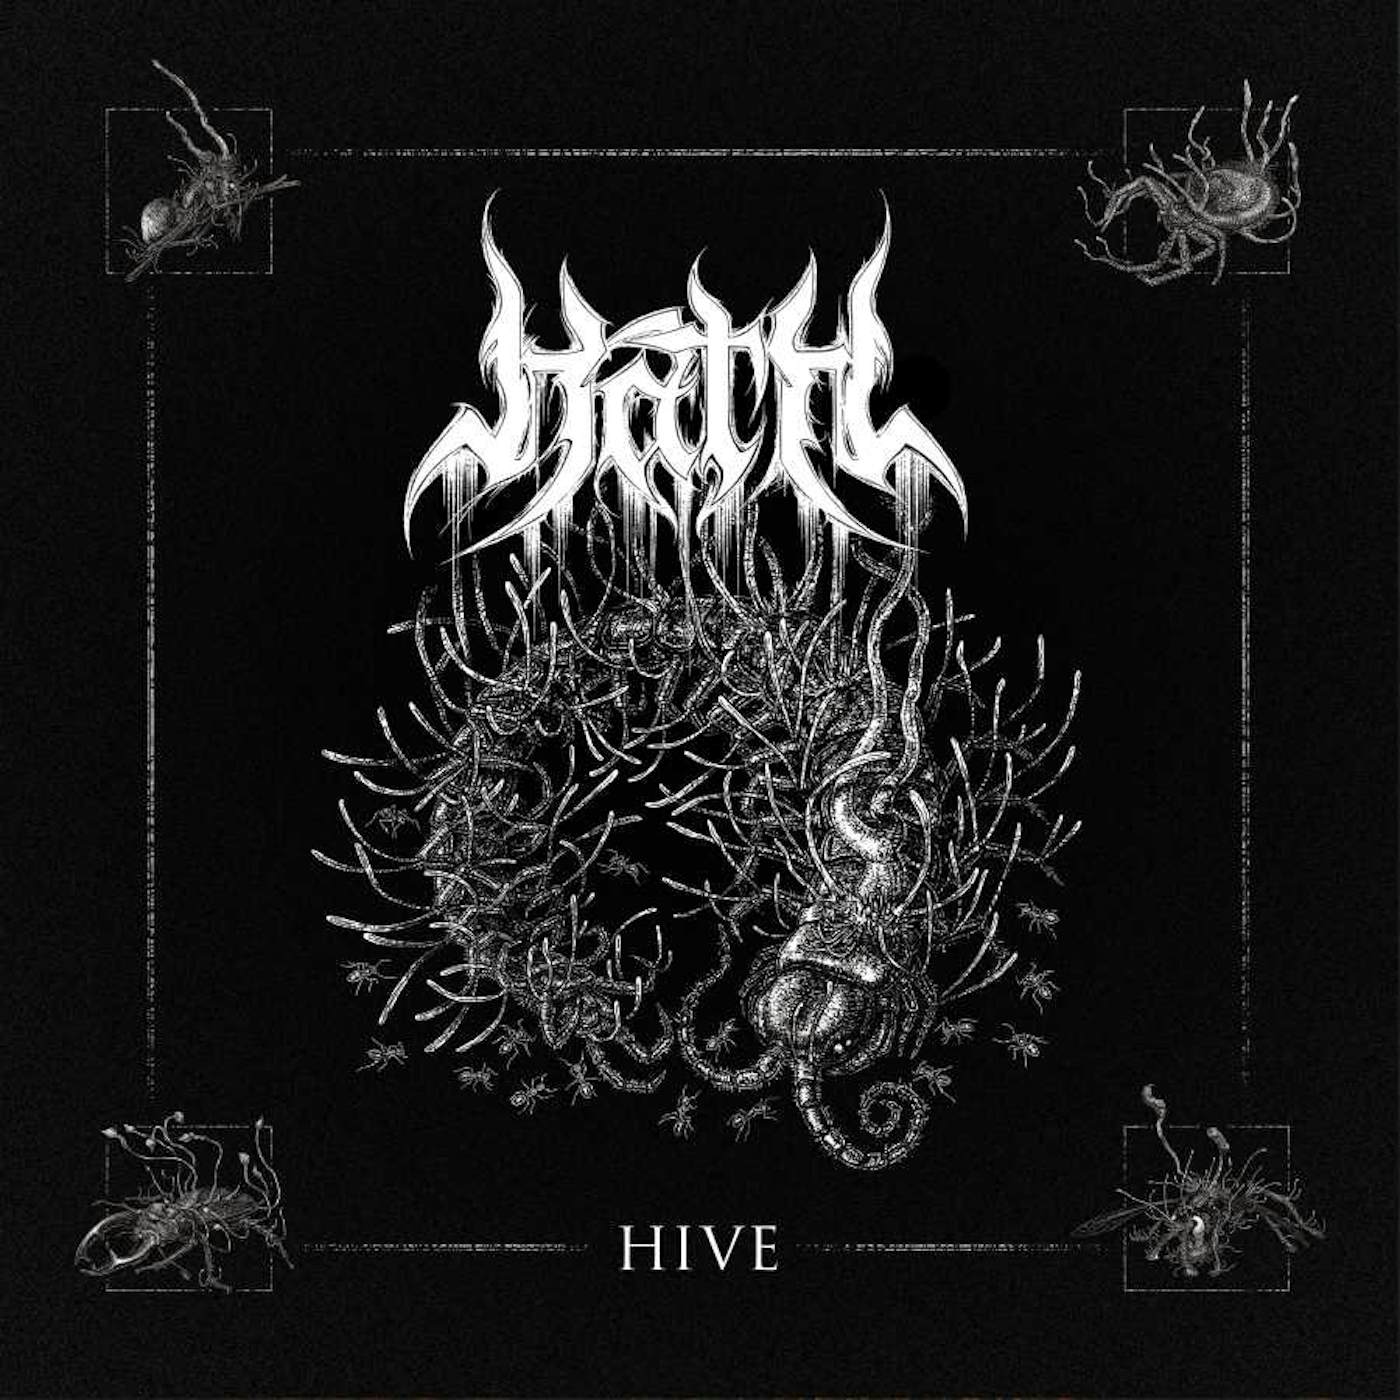 Hath Hive Vinyl Record